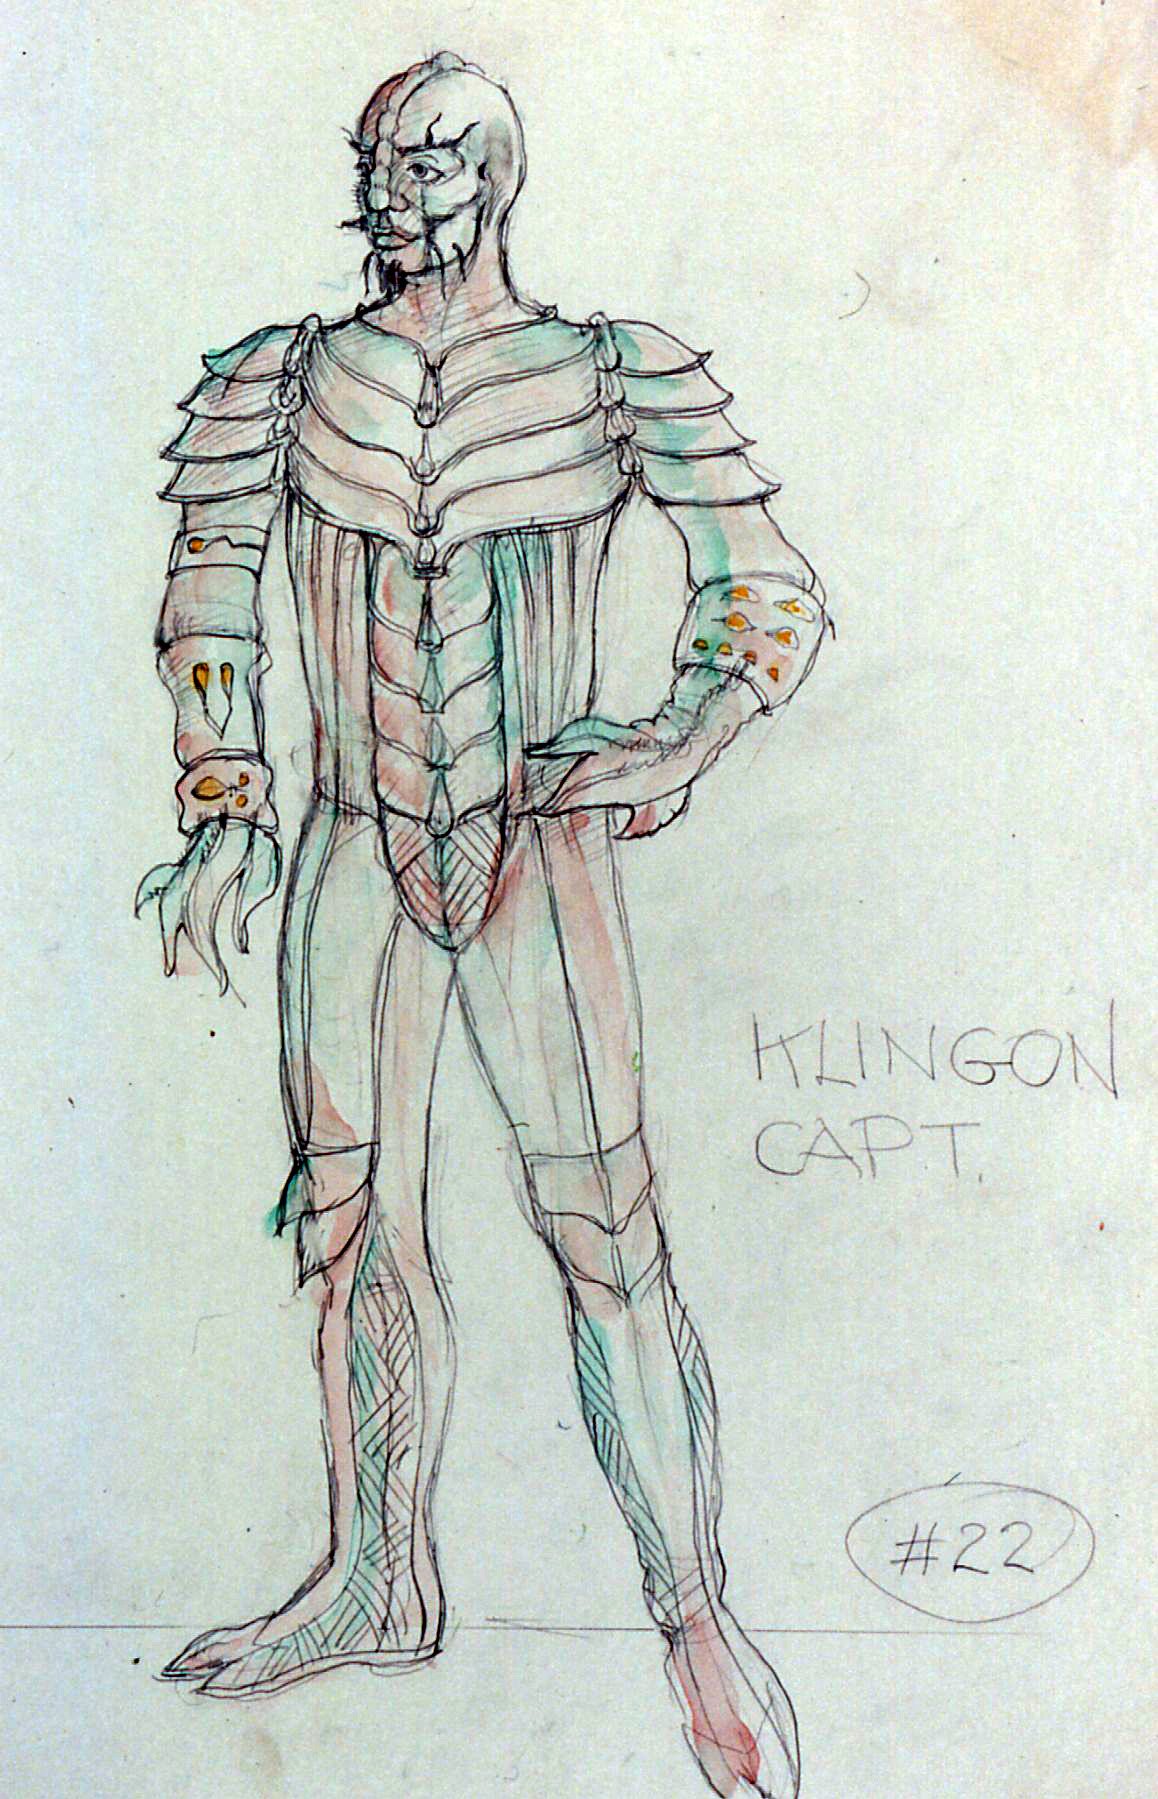 Klingon concept art